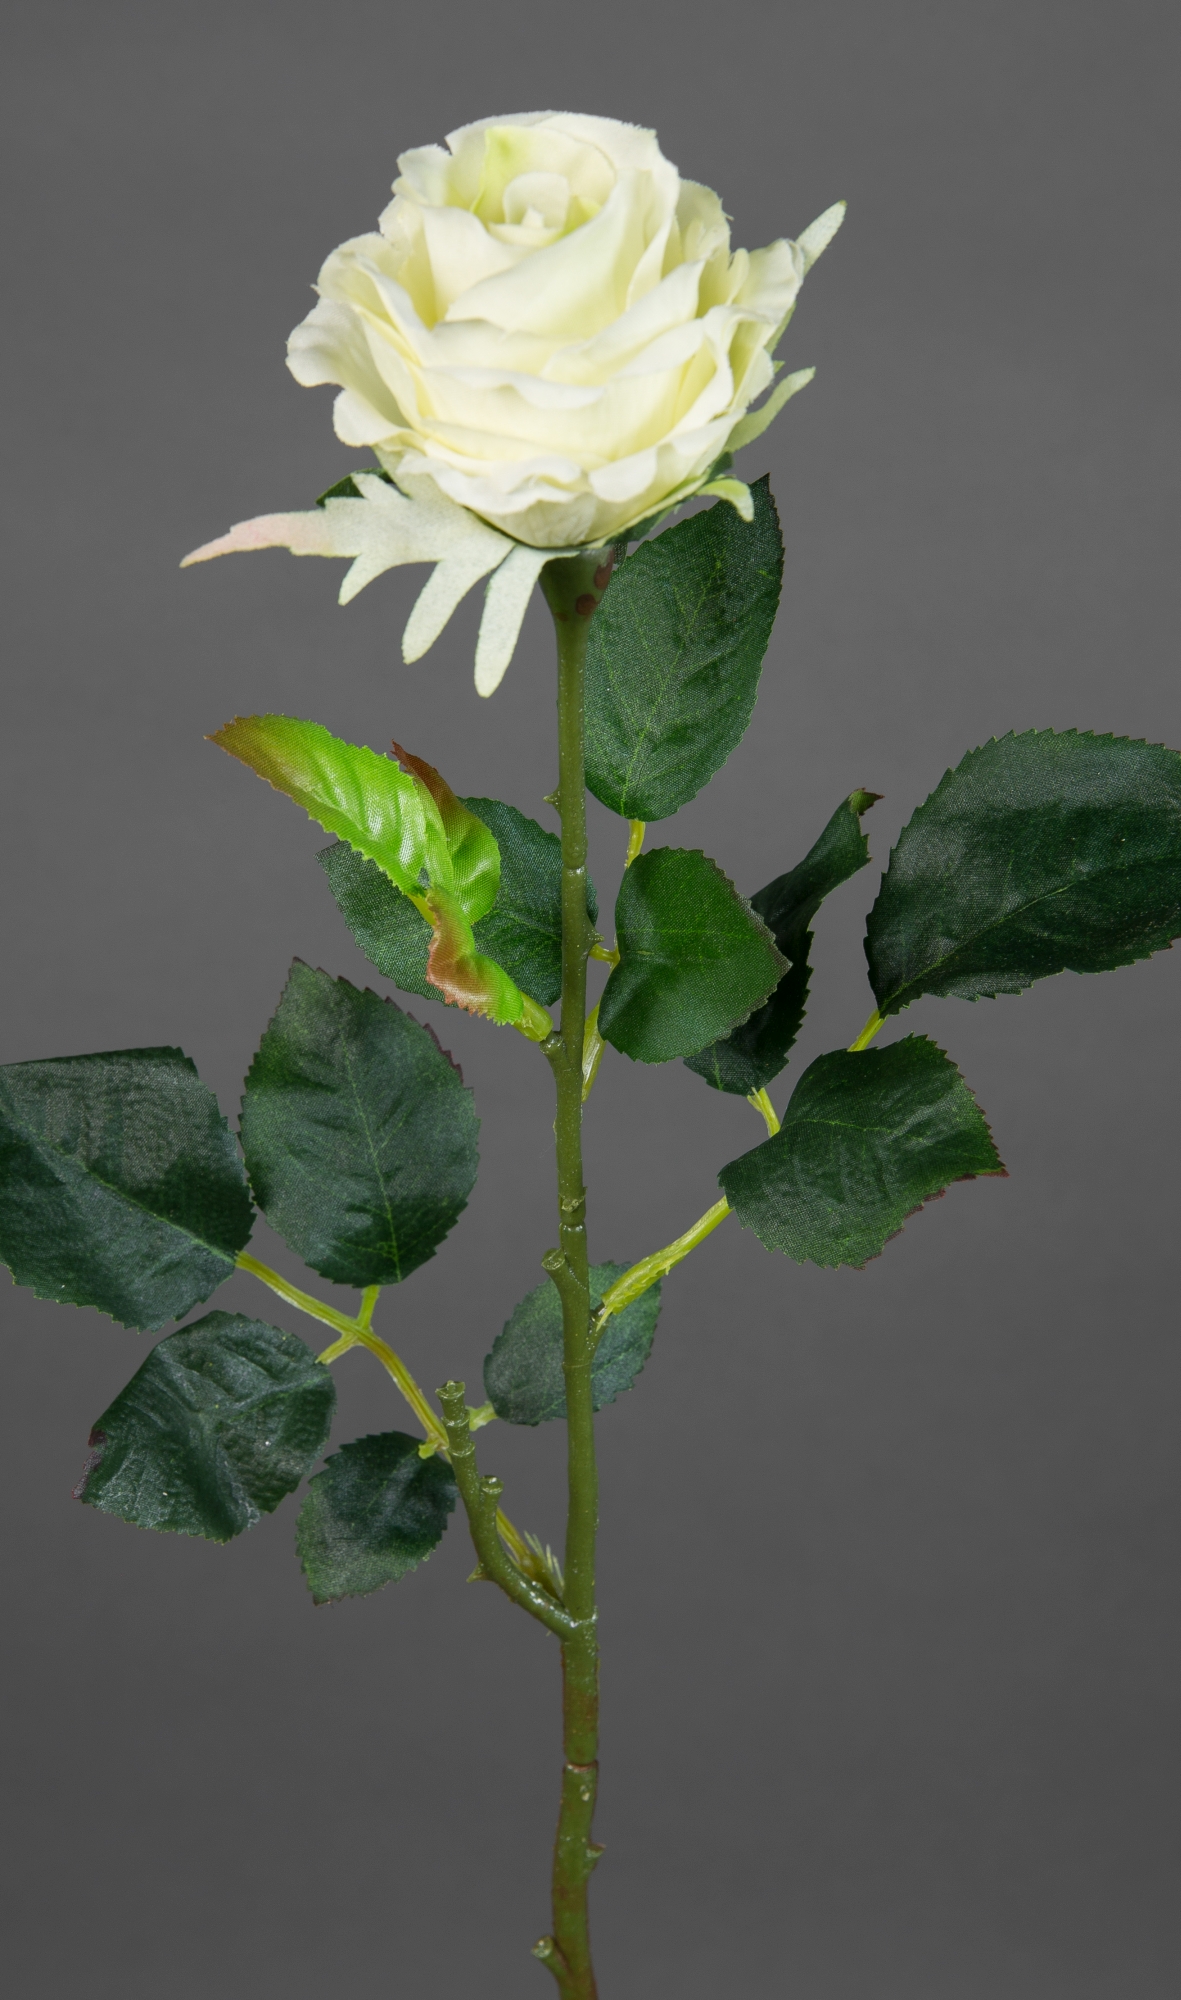 12 Stück Rose Elena 45cm weiß PM Seidenblumen Kunstblumen künstliche Blumen Rosen